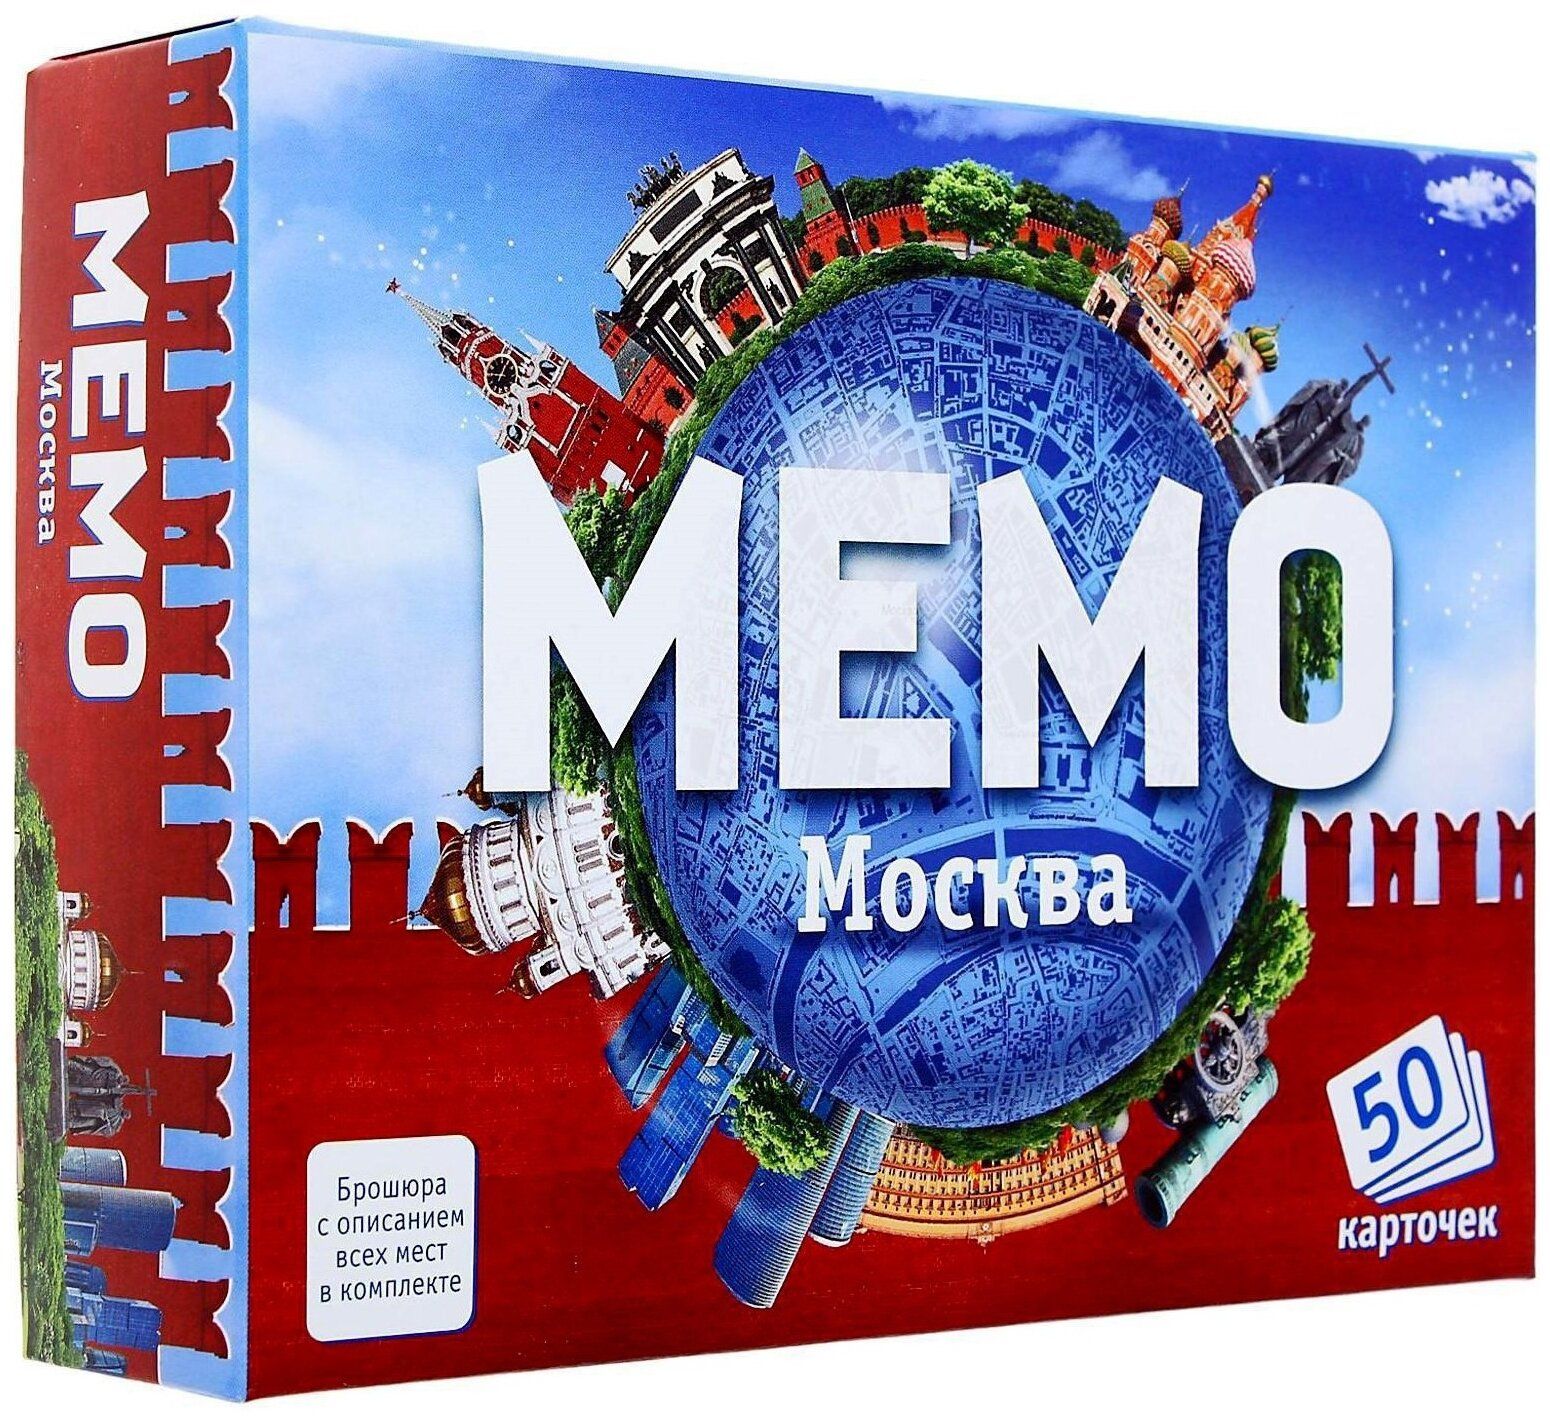 Мемо Москва арт.7205 (50 карточек) /48 настольная игра геменот мистериум арт 11664 1006